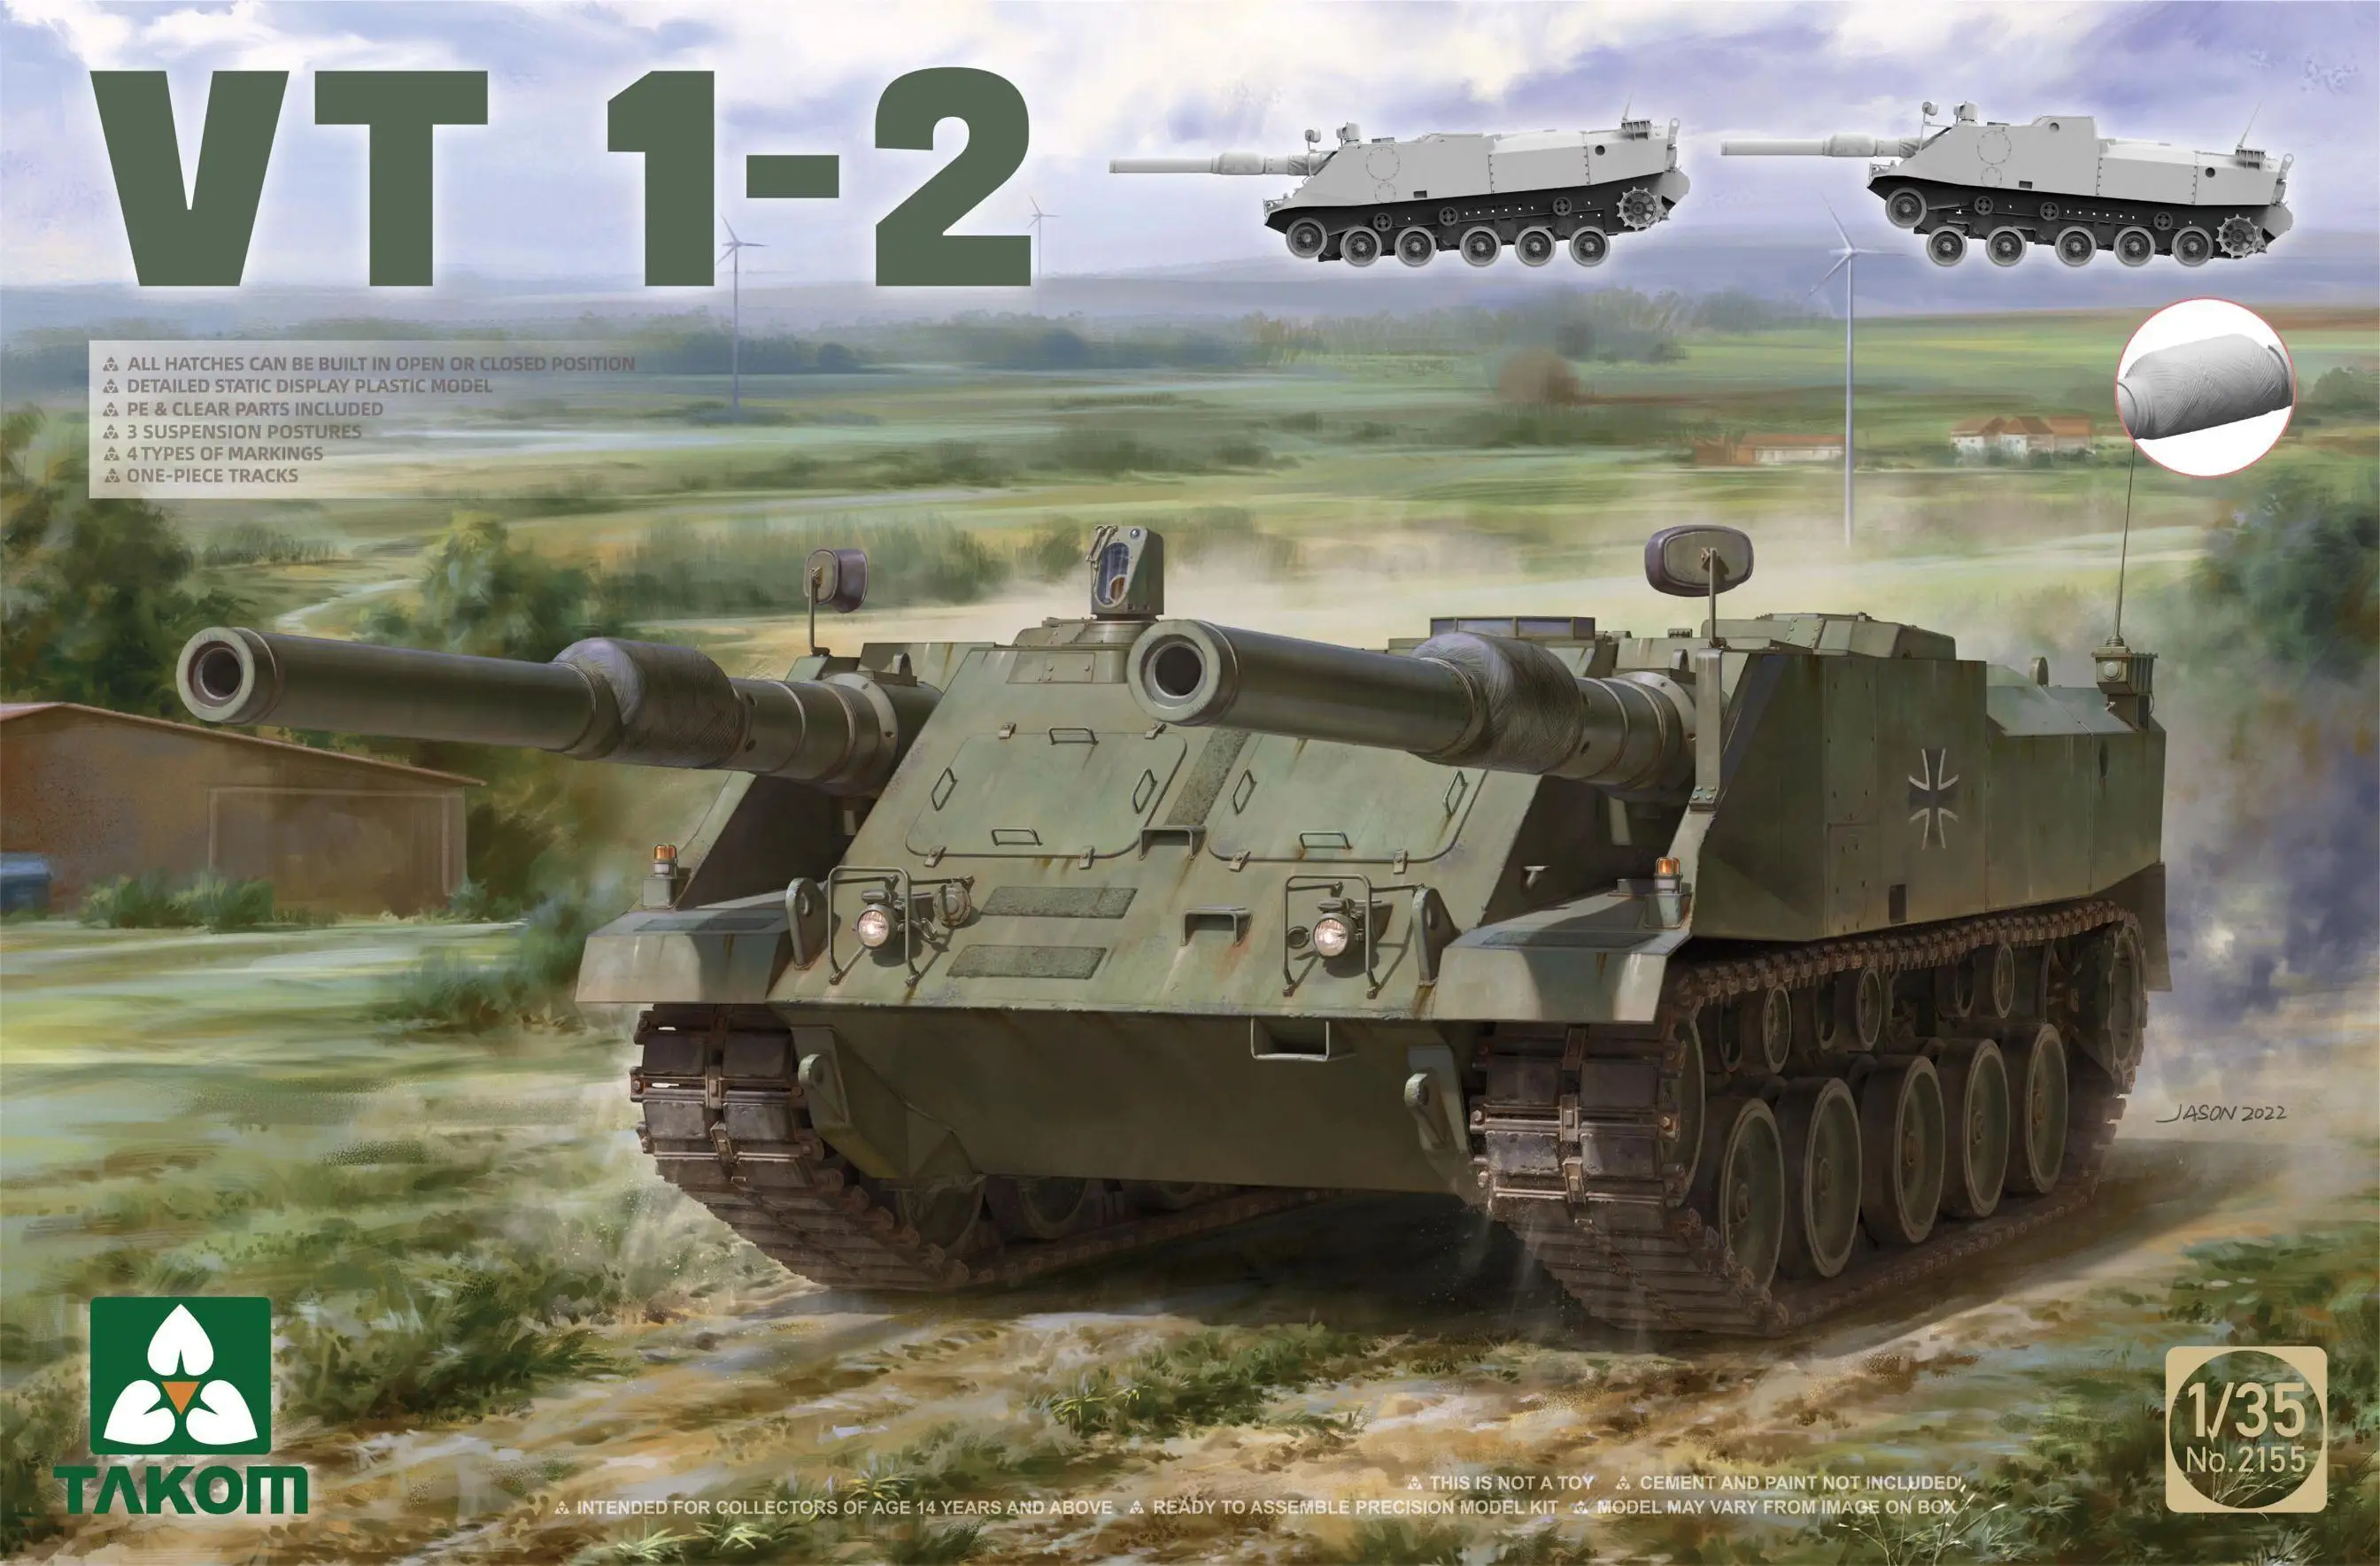 

Takom 2155 1/35 scale VT 1-2 main battle tank assemble plastic model kit